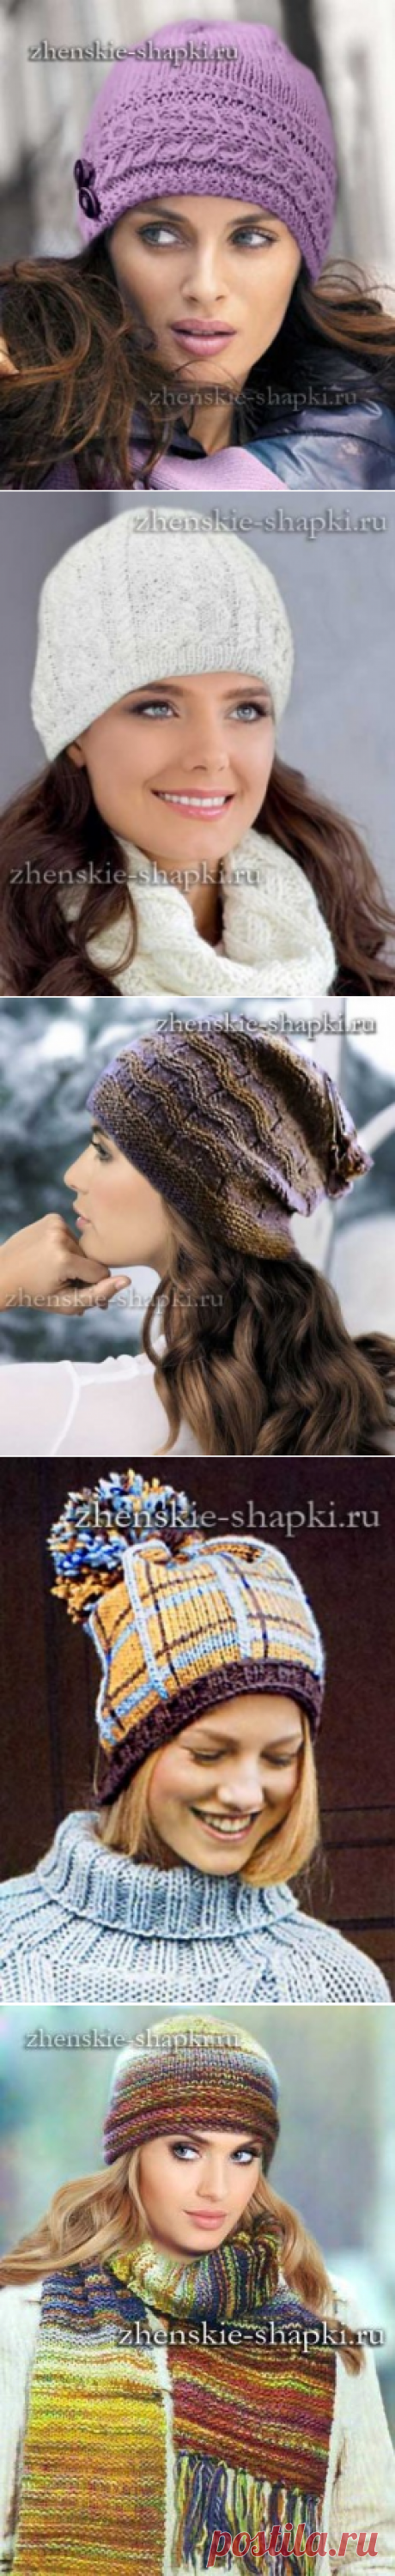 Вязаные шапки для женщин. Схемы вязания 100 моделей женских шапок и беретов спицами и крючком